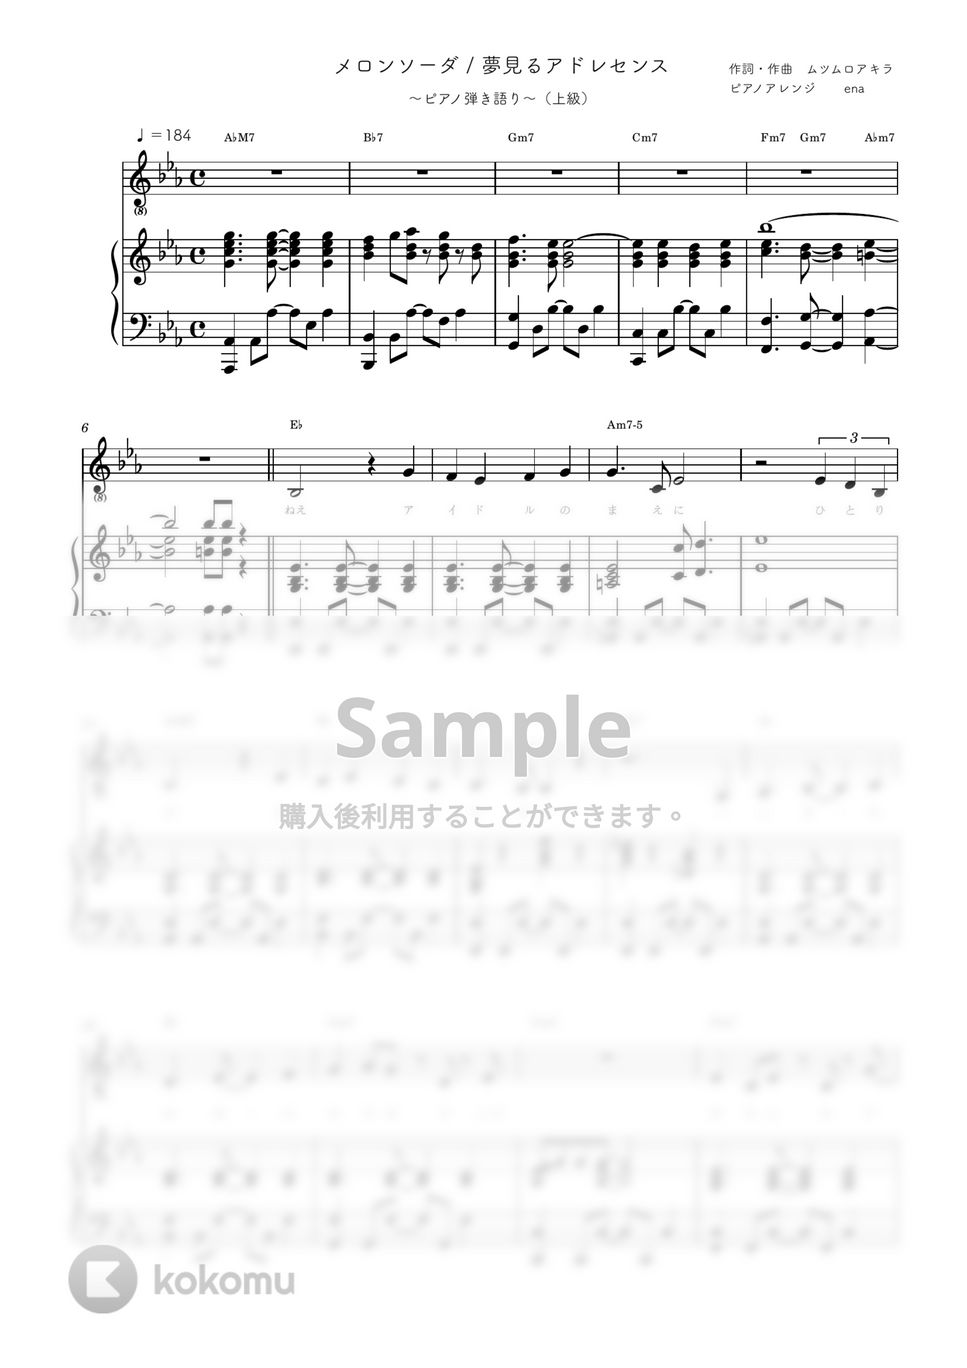 夢見るアドレセンス - メロンソーダ (ピアノ弾き語り上級歌詞・コードあり) by ena